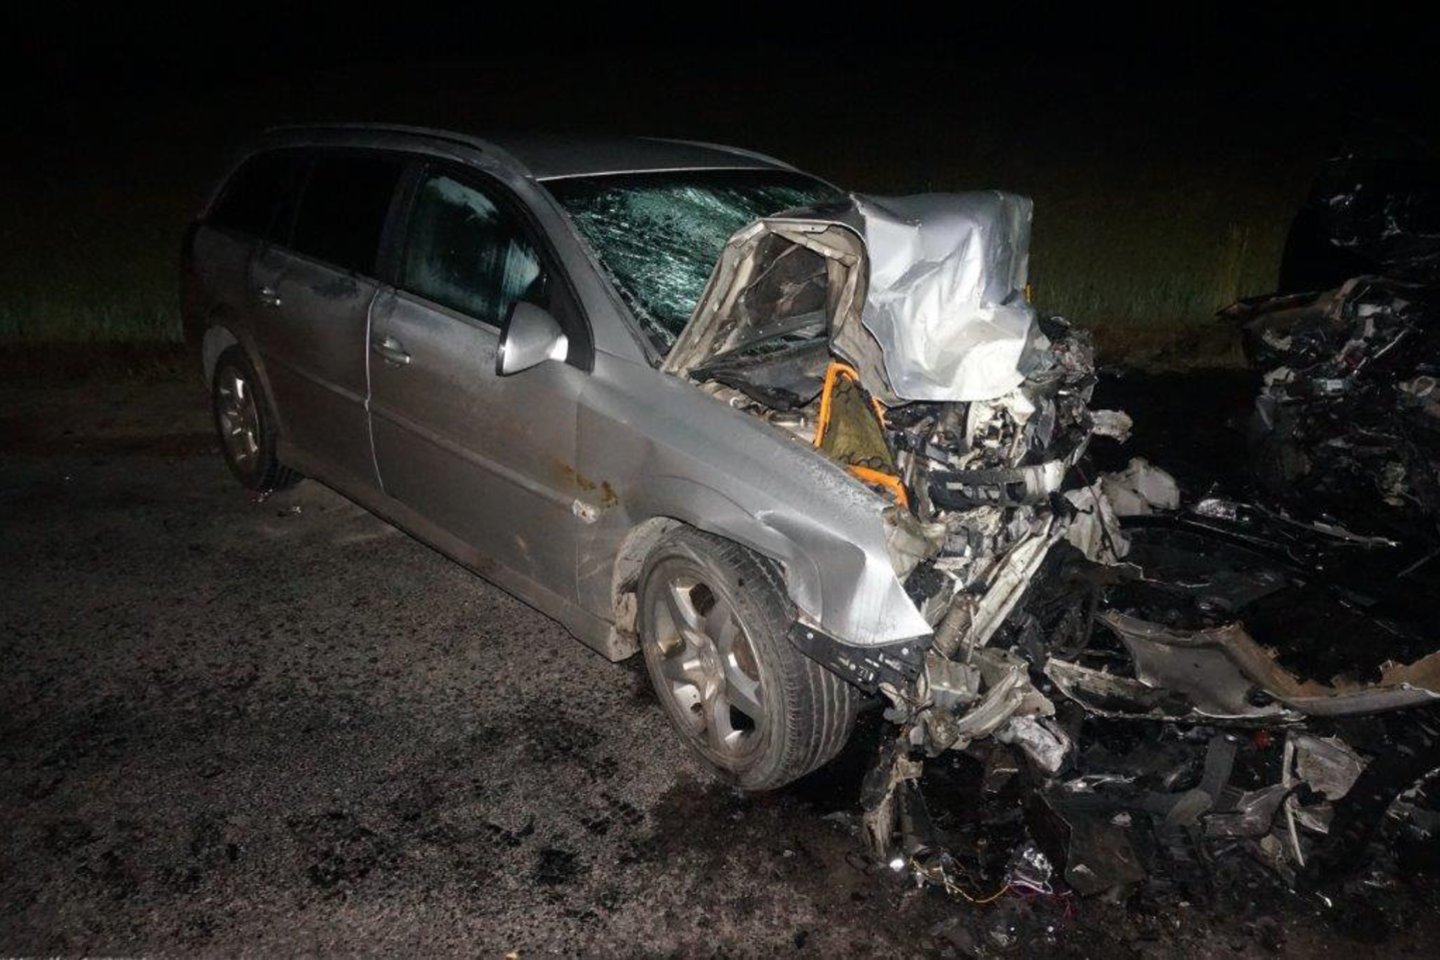 Plungės rajone kaktomuša susidūrus „Volkswagen Passat“ ir „Opel Vectra“ žuvo pastarajame automobilyje važiavęs vaikas.<br> Klaipėdos apskrities VPK nuotr.